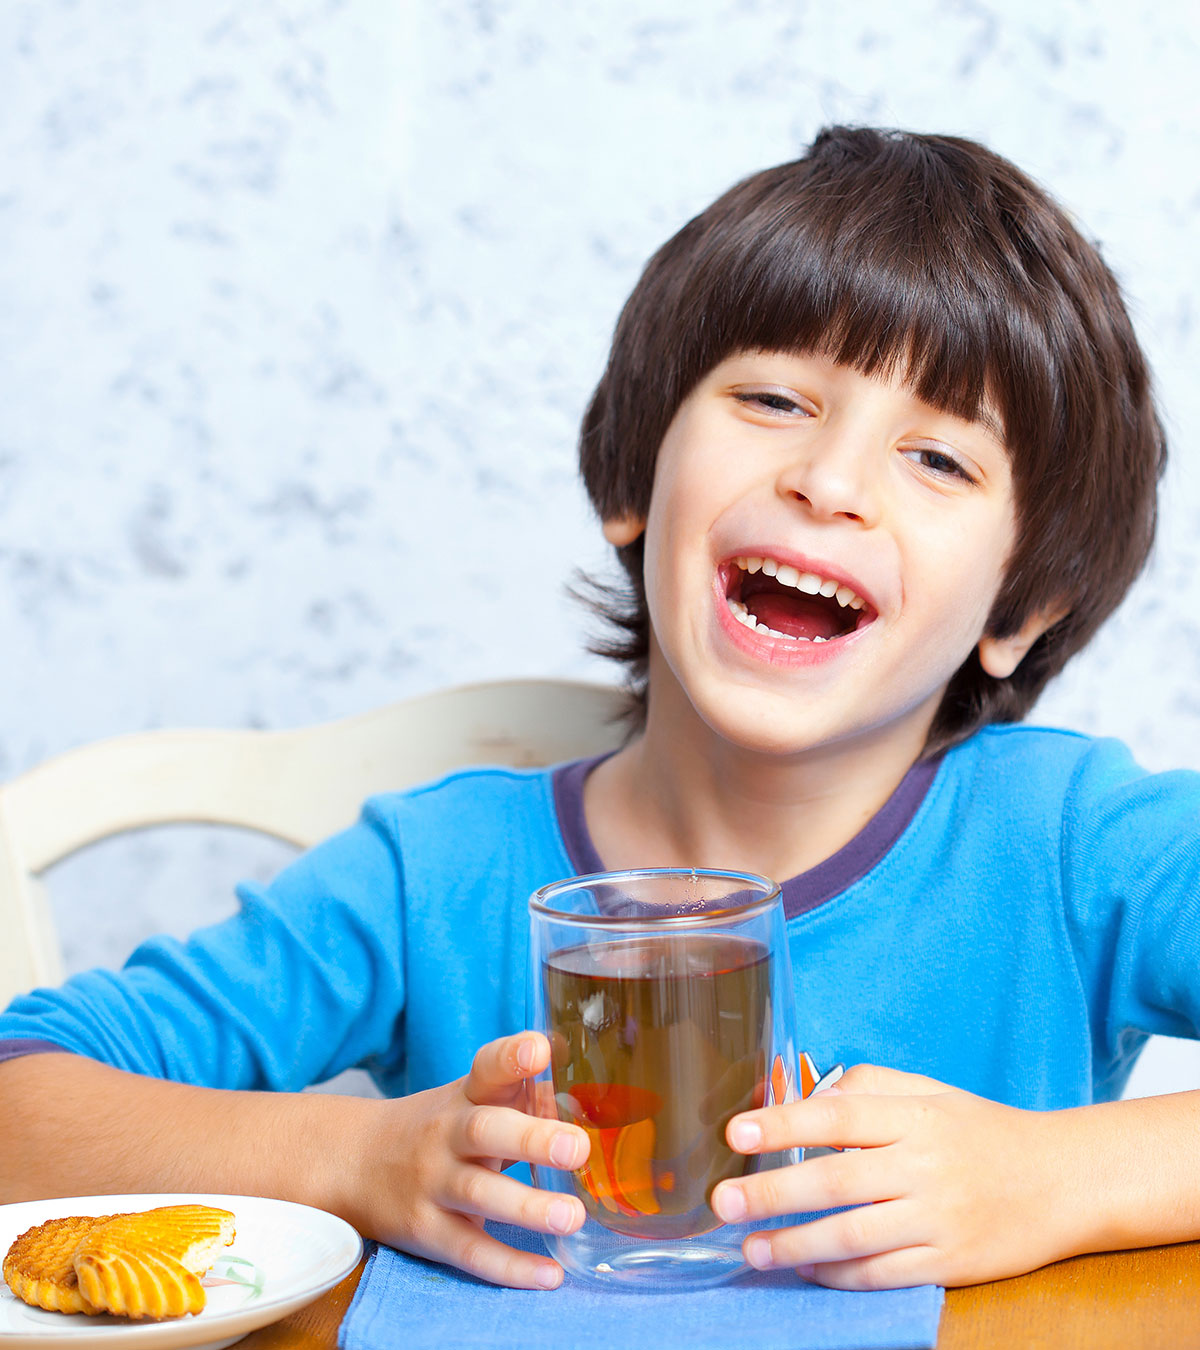 Is Chamomile Tea Safe For Kids?